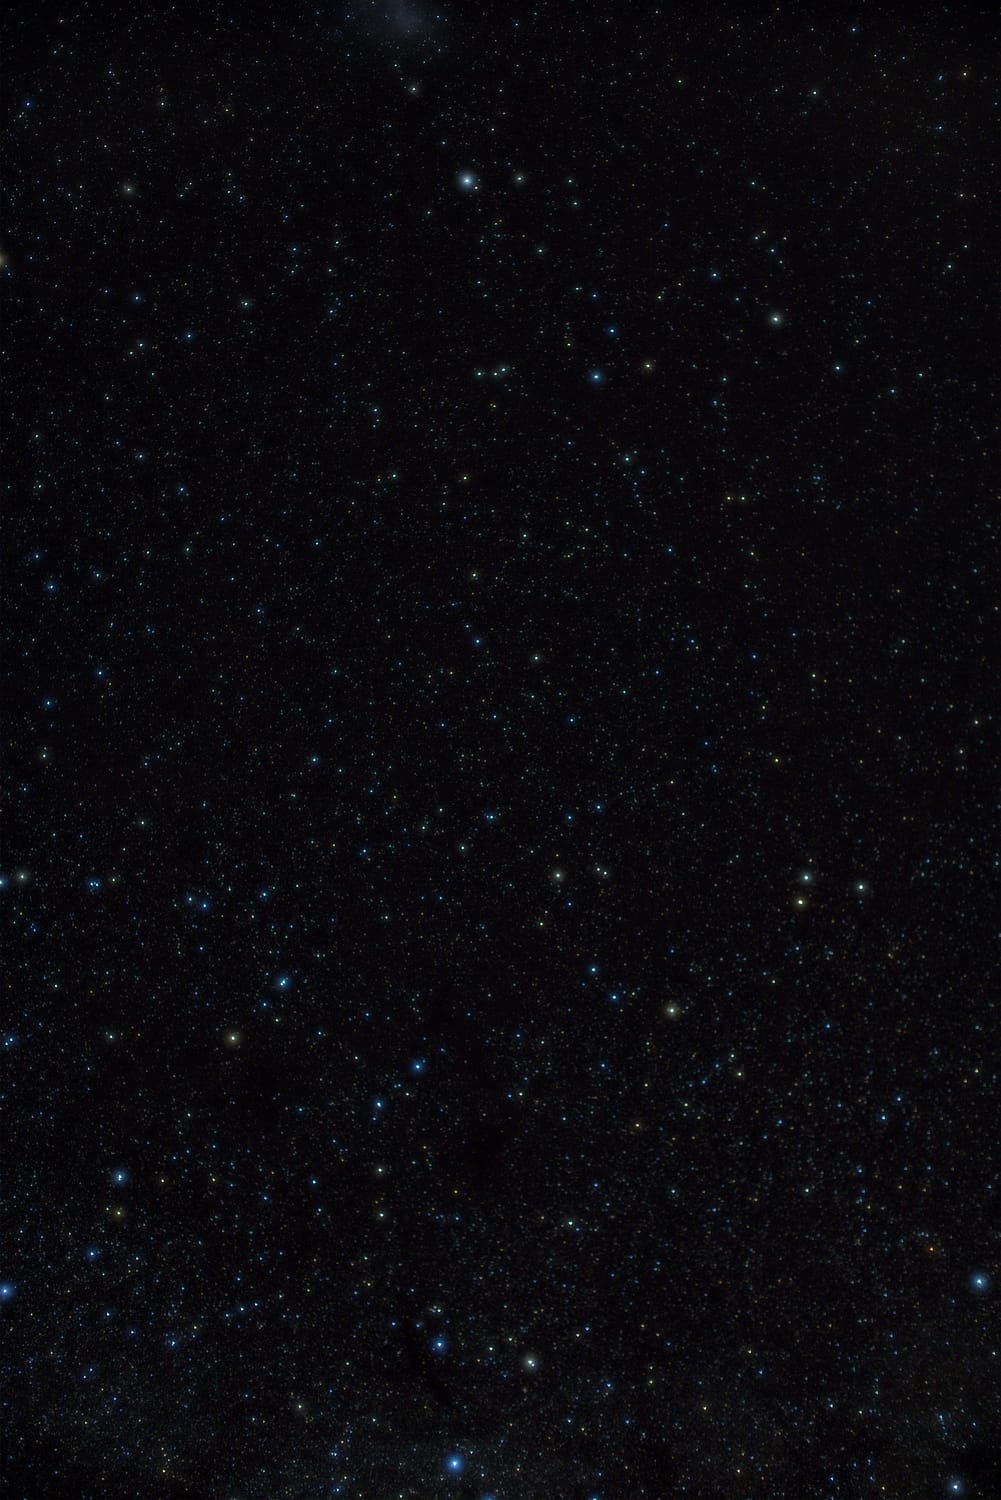 Der Oktant (lat. Octans) ist ein unscheinbares Sternbild am Südhimmel, das den südlichen Himmelspol umgibt.